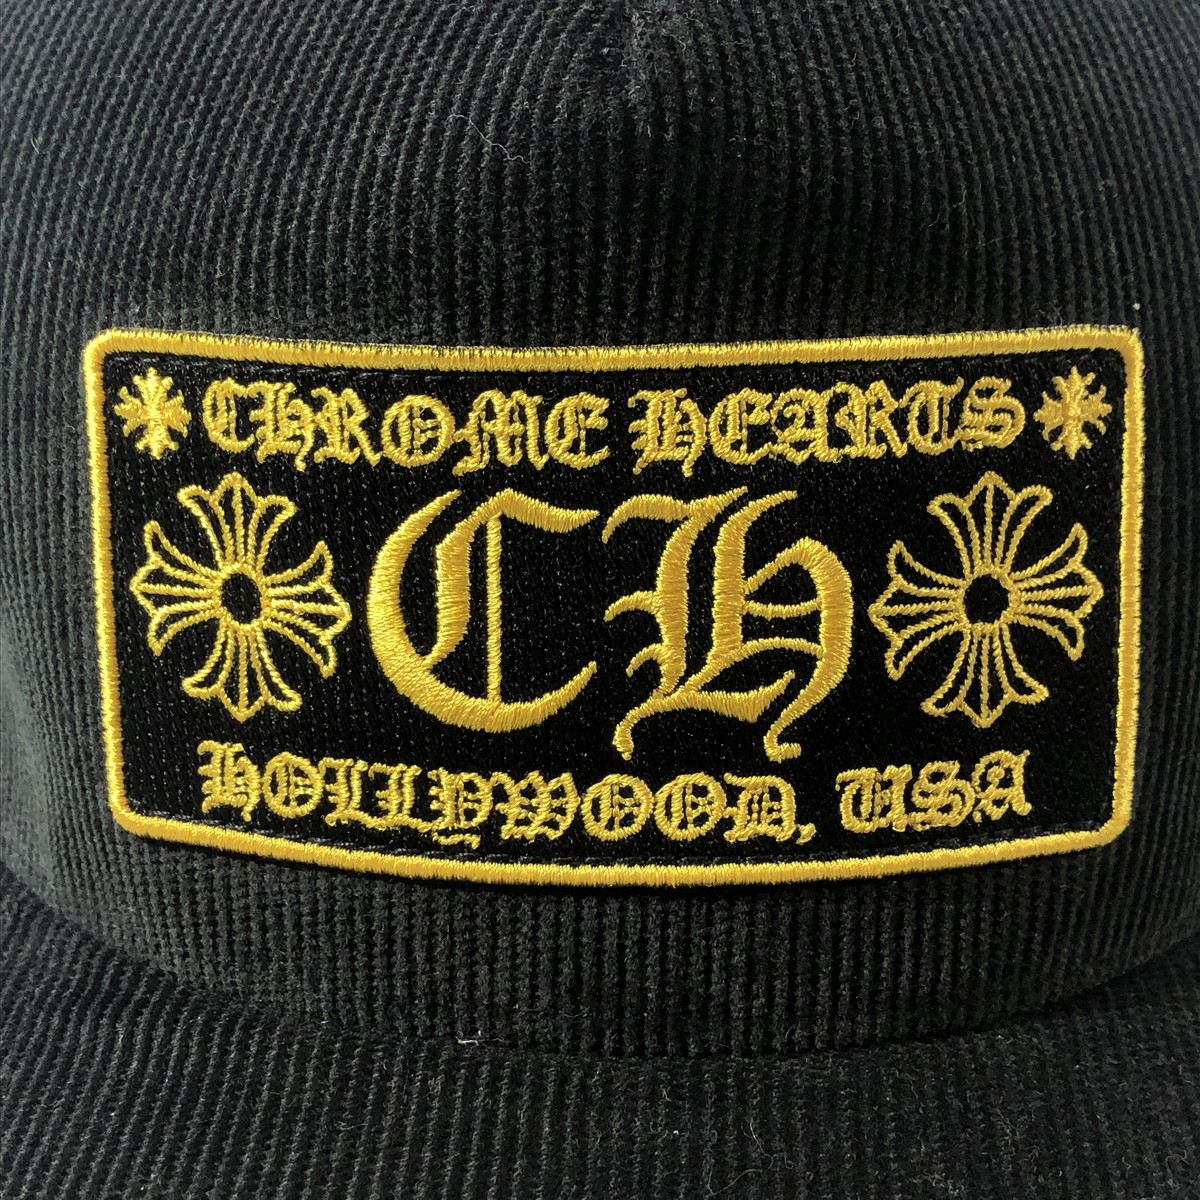 良品 クロムハーツ CHROME HEARTS キャップ コーデュロイ トラッカー メッシュ CHパッチ CORDUROY TRUCKER CAP 黒 帽子 画像